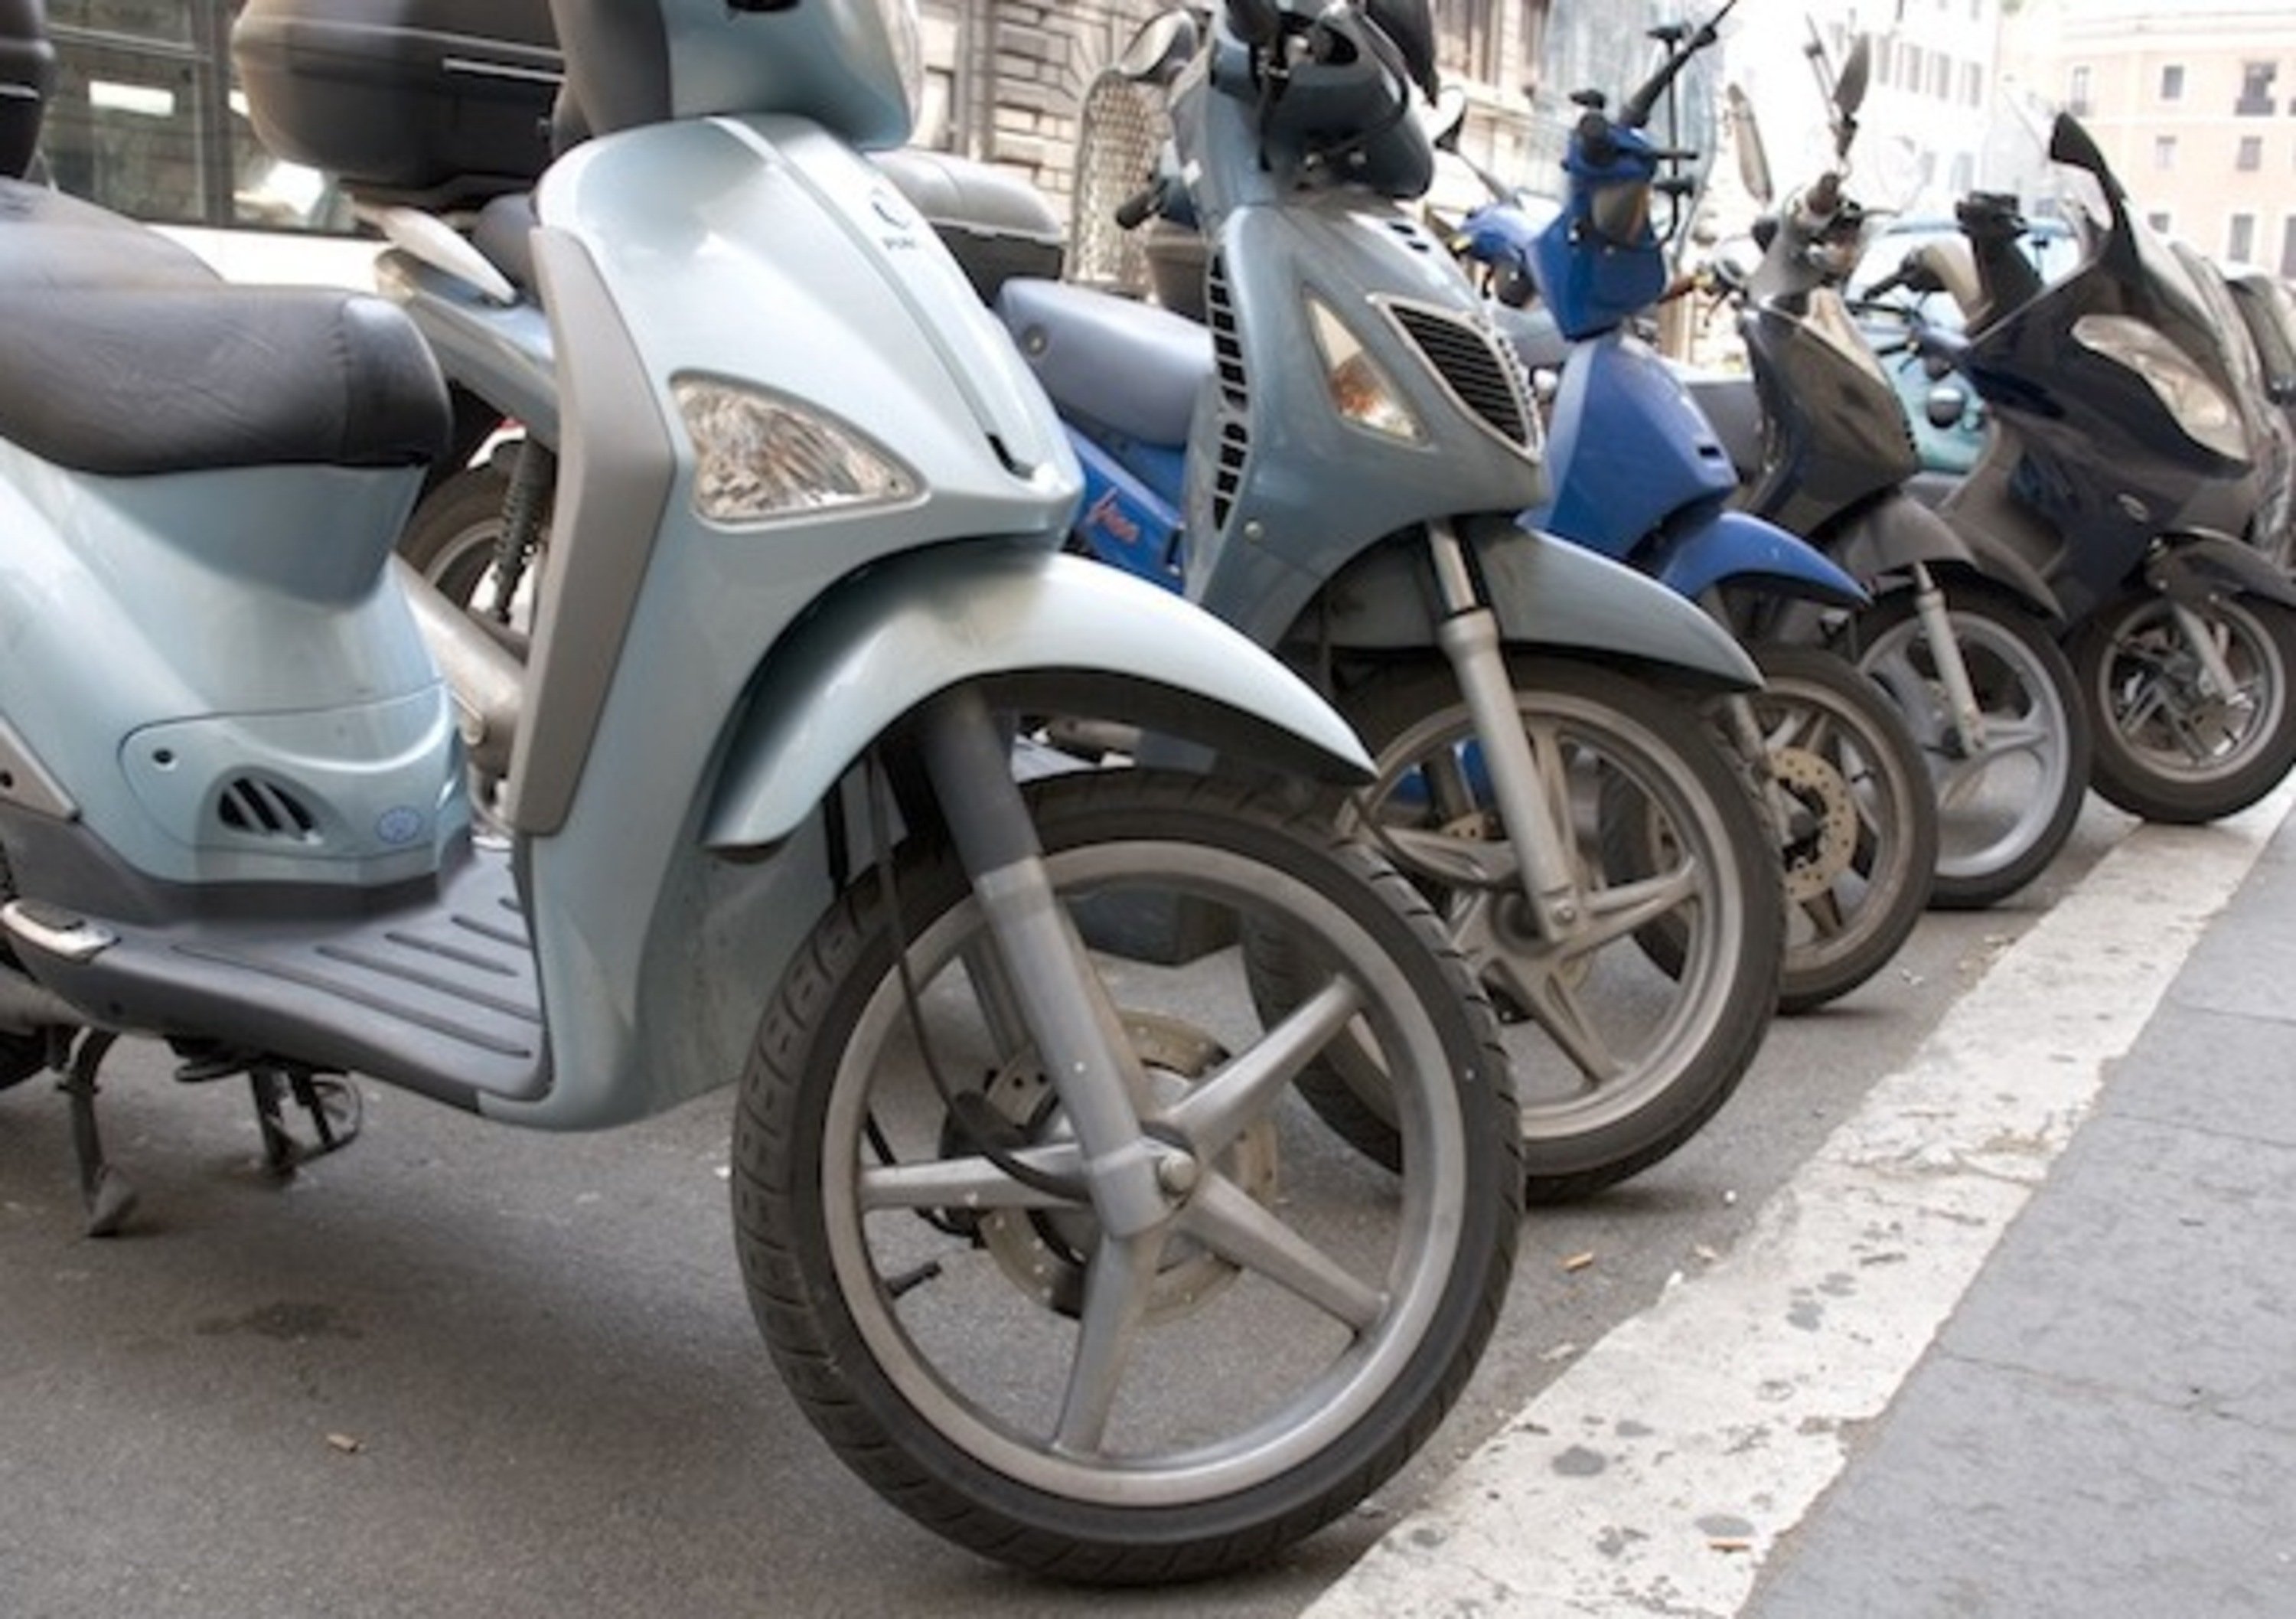 Pioggia di multe su scooter e moto parcheggiati in centro a Milano